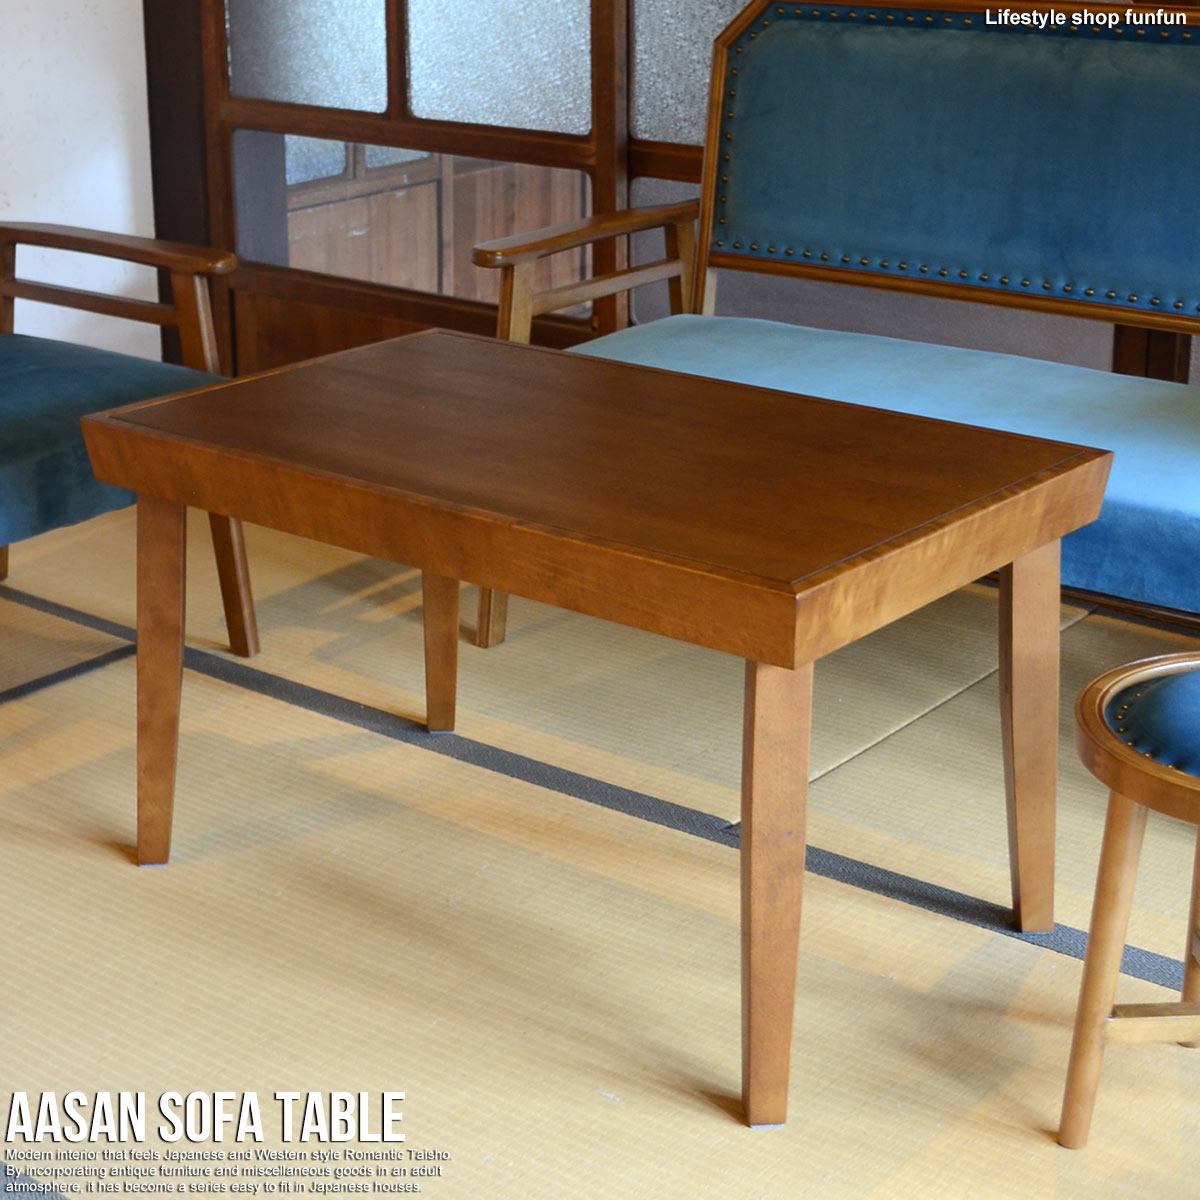 AASAN アッサン テーブル ソファテーブル 幅90 リビングテーブル 古民家畳部屋 洋室 和室 テーブル アンティーク風 ダイニングテーブル 在宅勤務